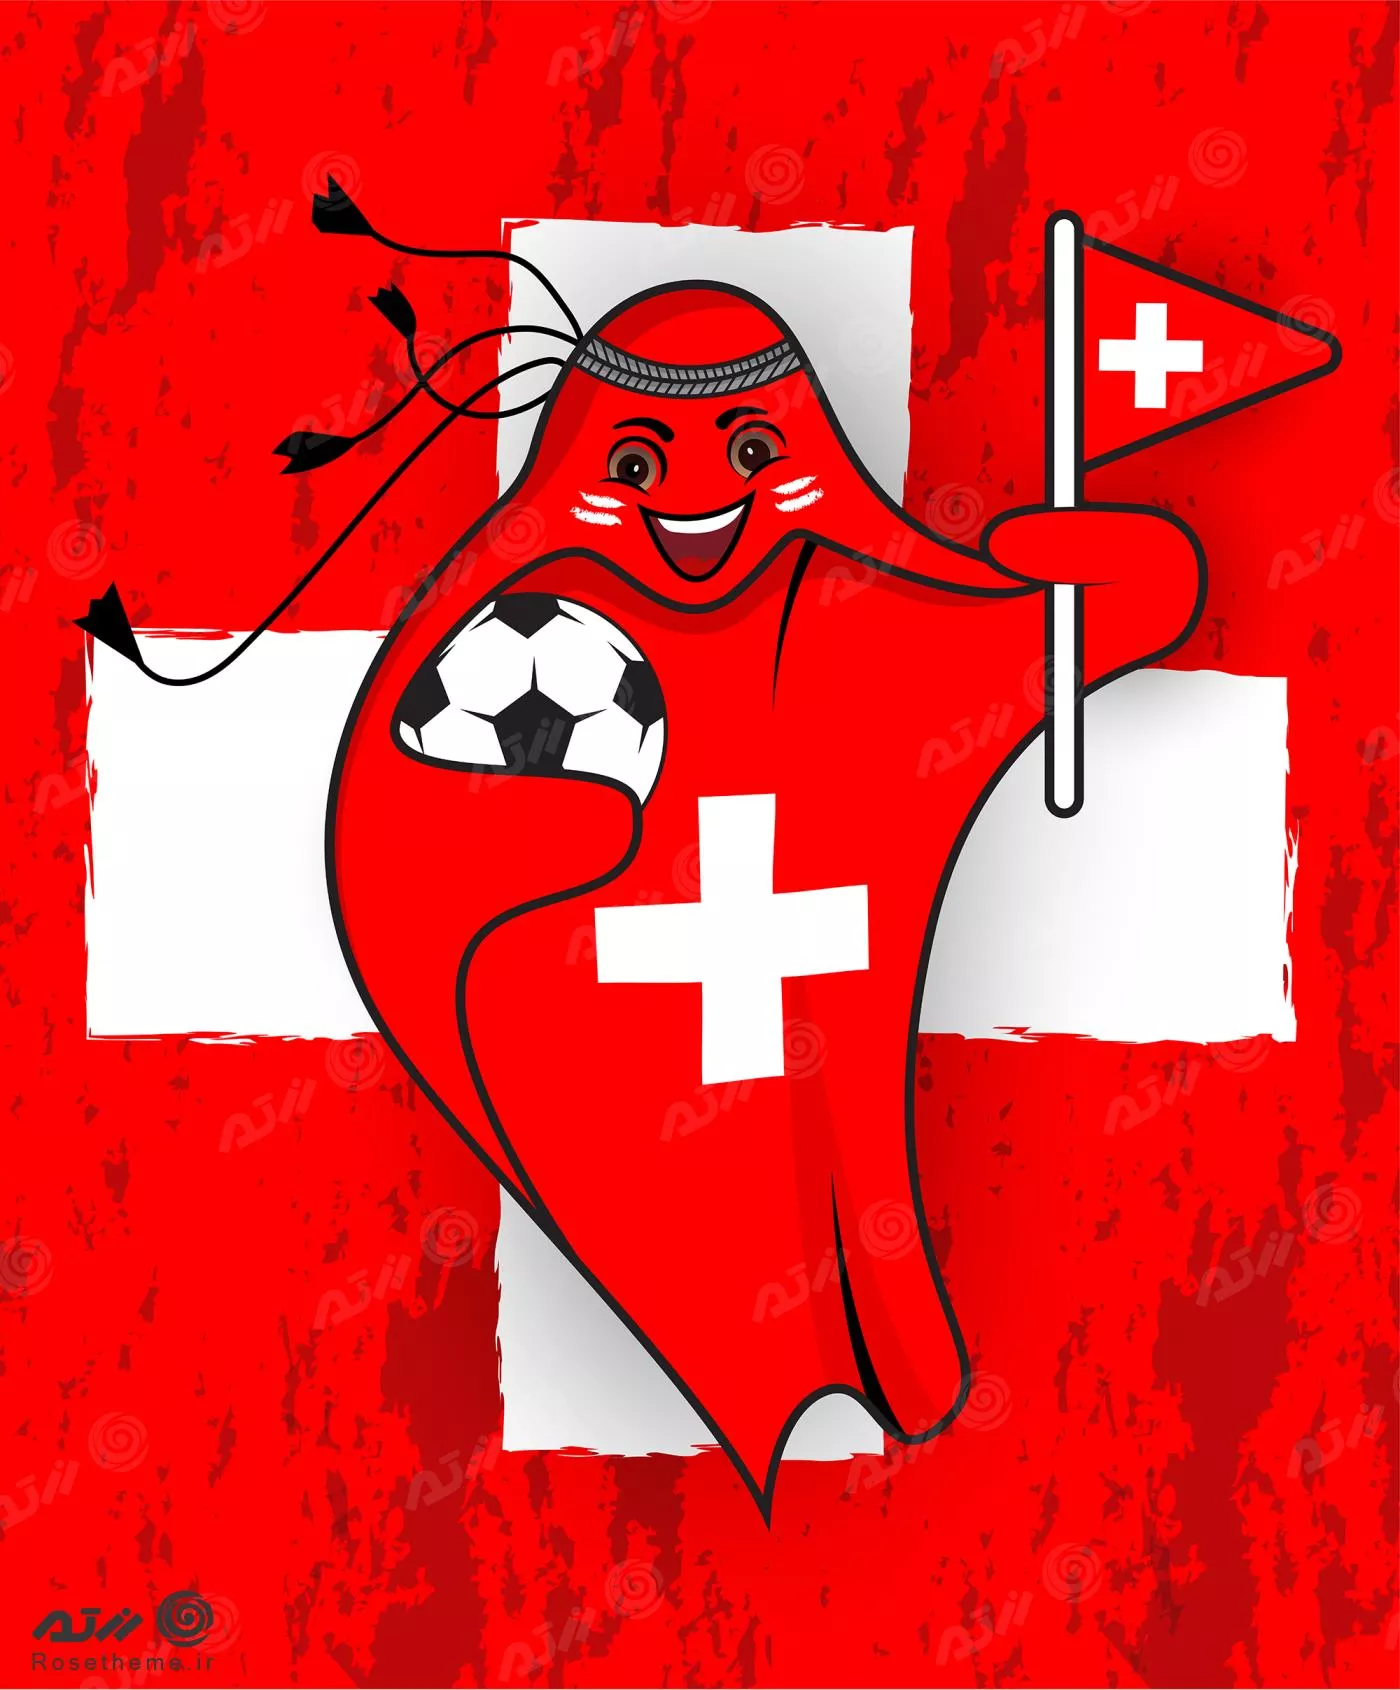 پرچم سوئیس در قالب نماد جام جهانی قطر 2022 به صورت وکتور EPS لایه باز  23346